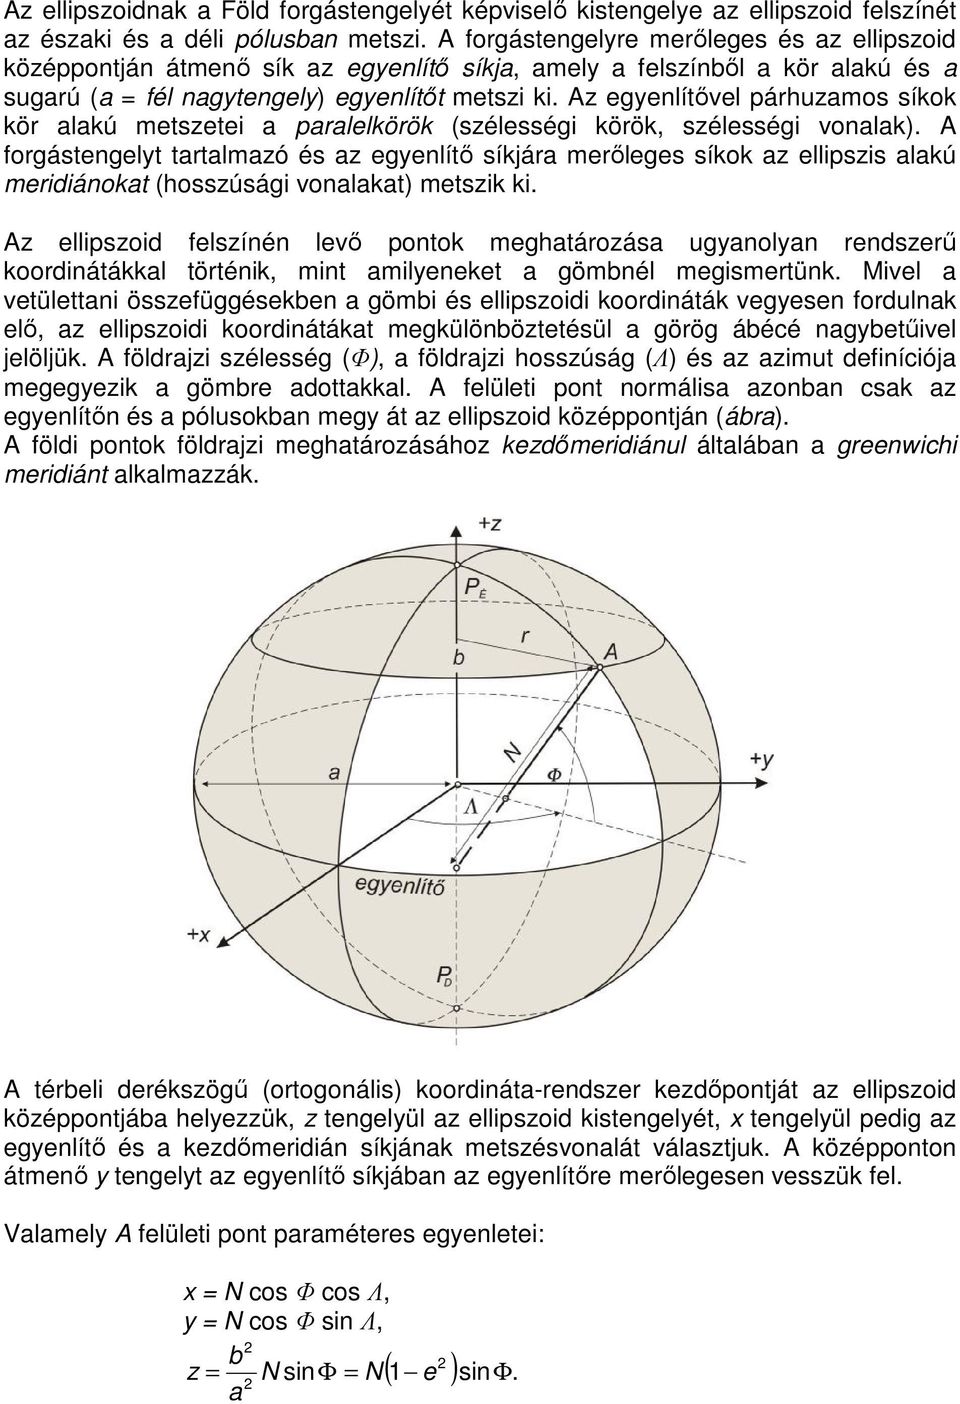 Az egyenlítővel párhuzamos síkok kör alakú metszetei a paralelkörök (szélességi körök, szélességi vonalak).